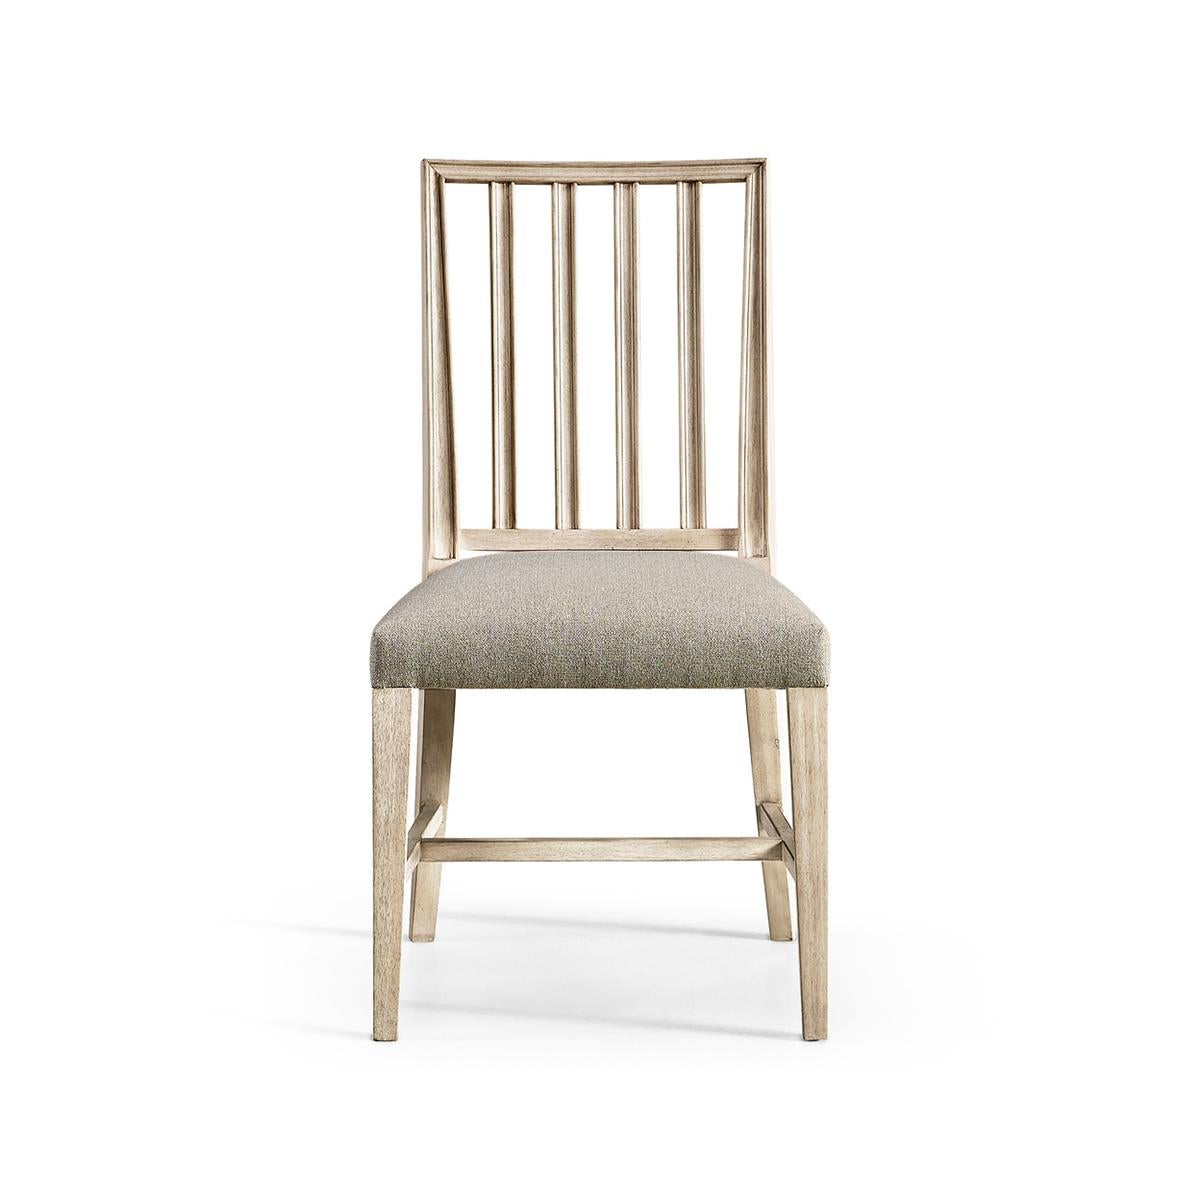 Schwedischer Beistellstuhl in gebleichtem Walnussholz, mit makellosen Formen und klaren Linien, die einen Essbereich mit Leichtigkeit aufwerten oder verkleinern können. Mit einer geformten Rückenlehne und einem herrlich plüschigen Kissen, das mit